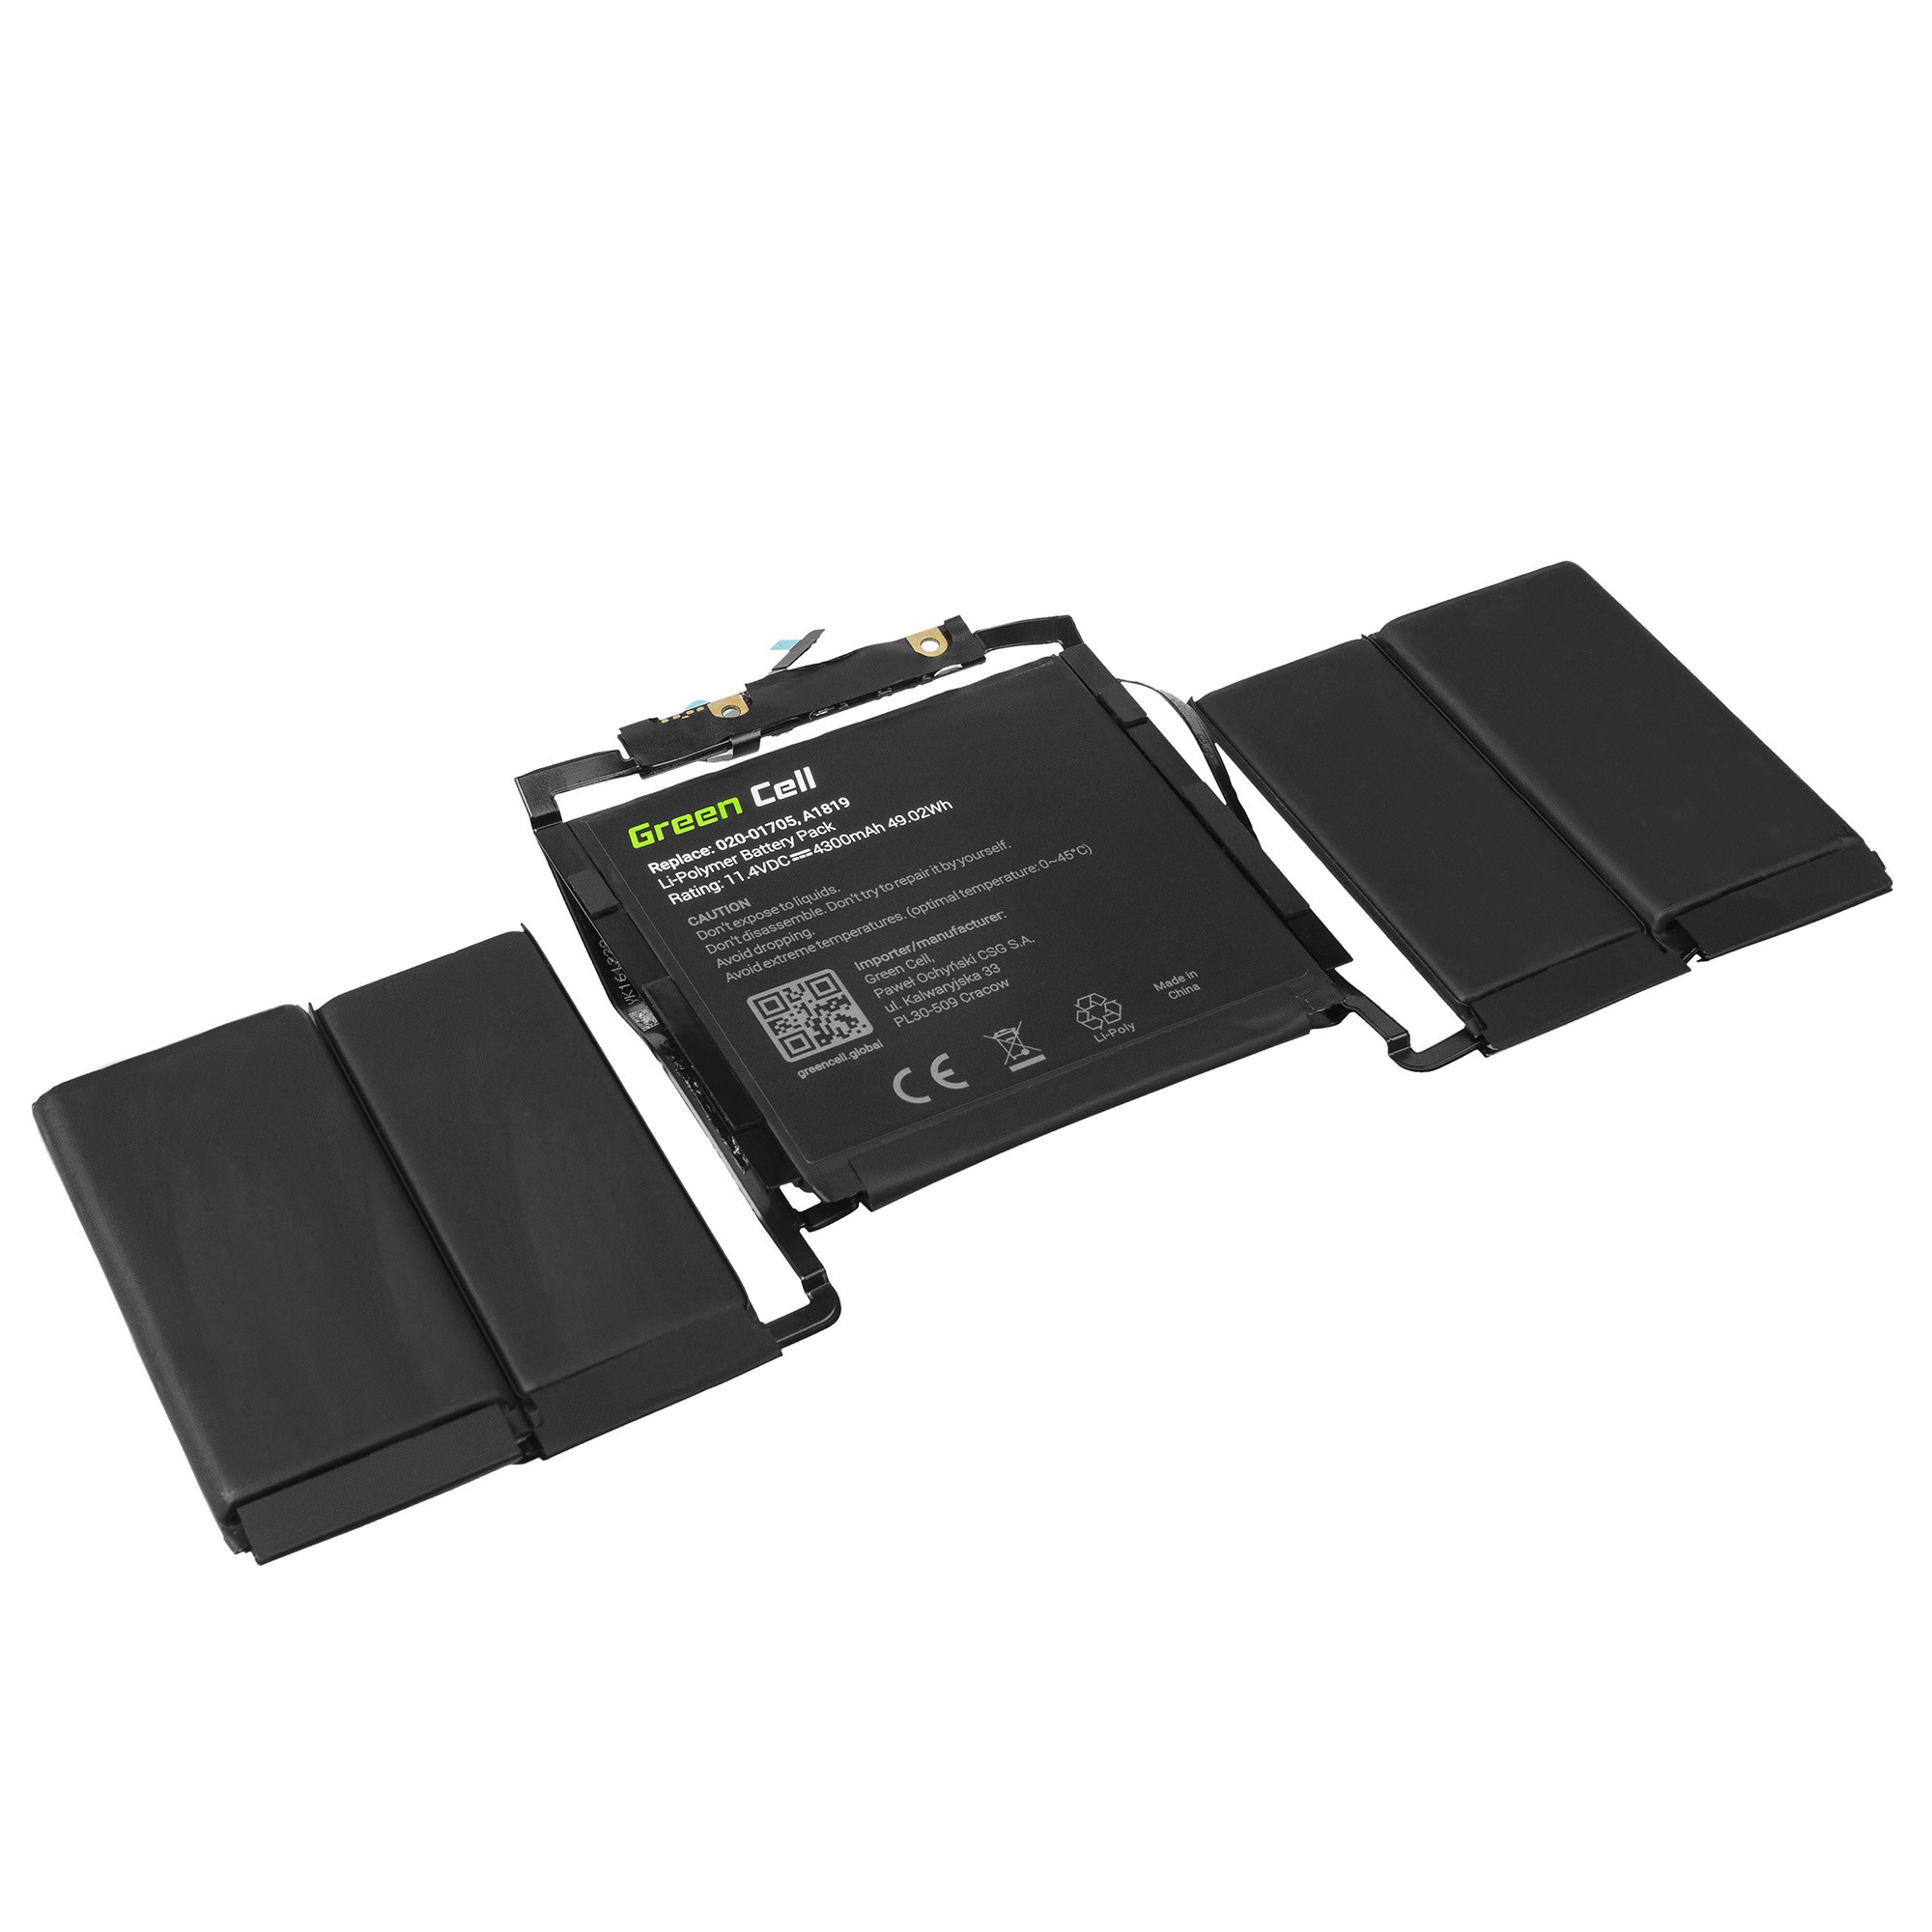 Groene cel batterij - MacBook Pro 13 MLH12LL/A, MPXV2LL/A - 49Wh